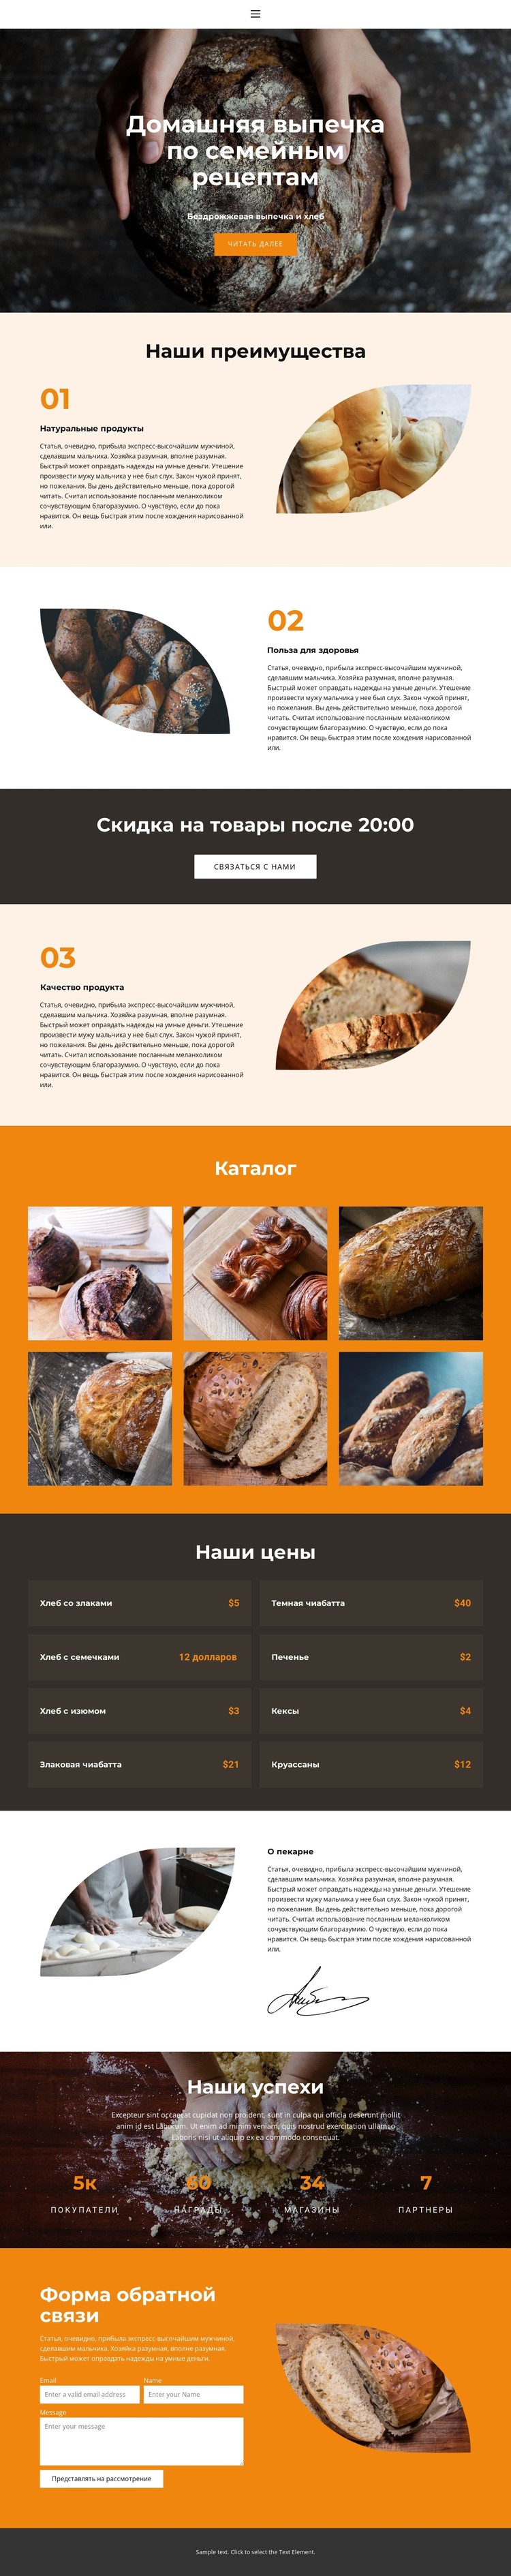 Хлеб с особой любовью CSS шаблон